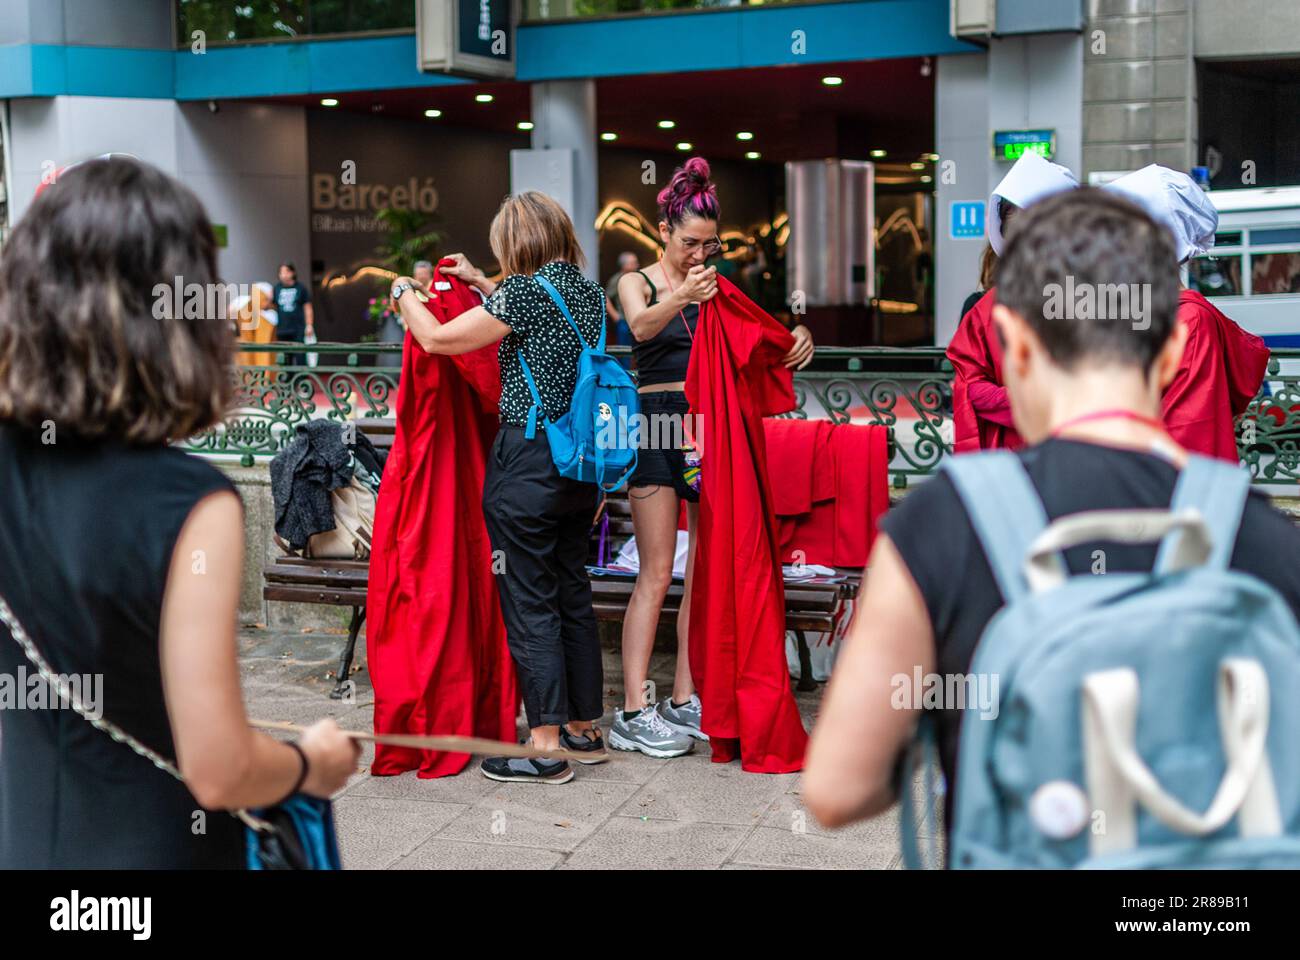 Des activistes féministes radicaux vêtus d'un costume de la série "The Handmaid's Tale" participent à une manifestation contre le recours aux mères porteuses. Banque D'Images